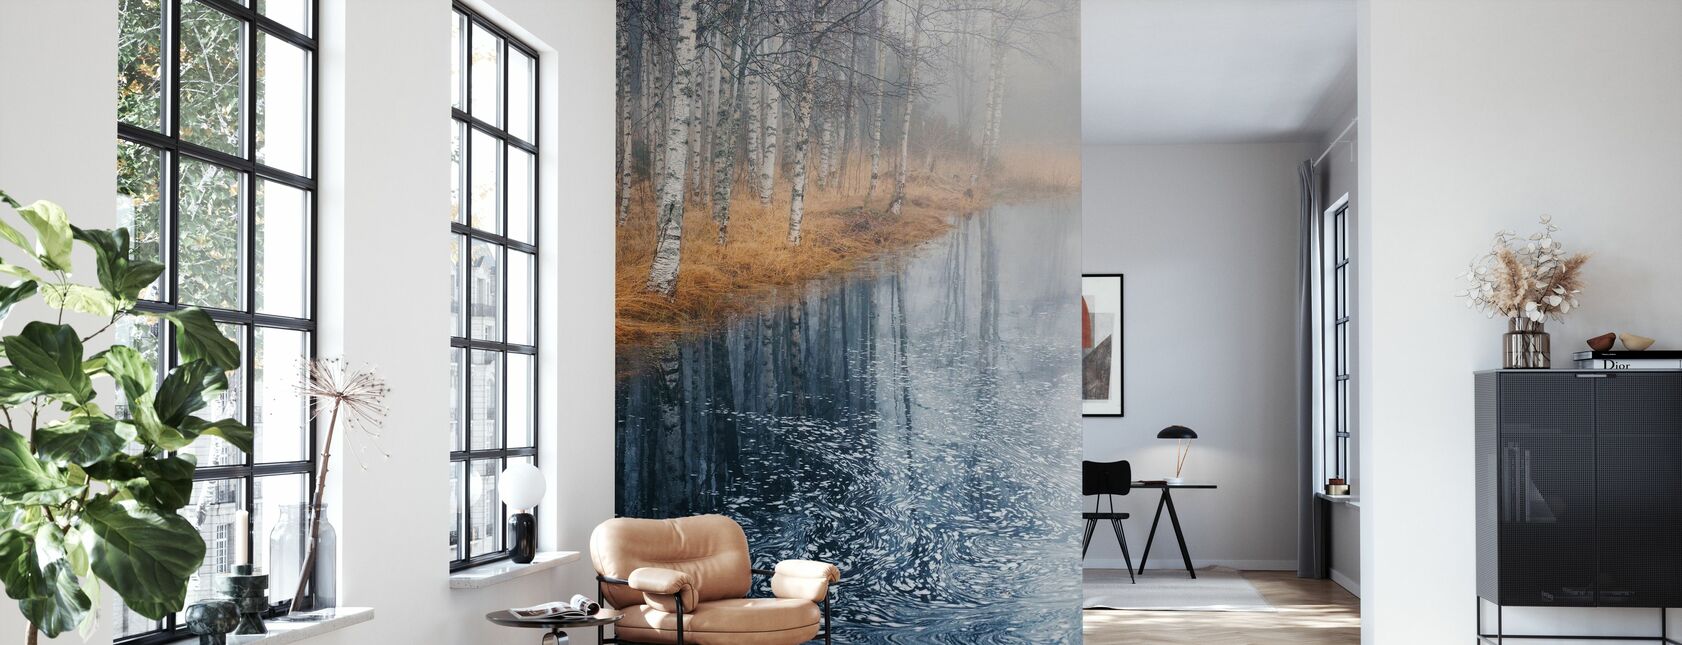 Monet Revisited - Wallpaper - Living Room